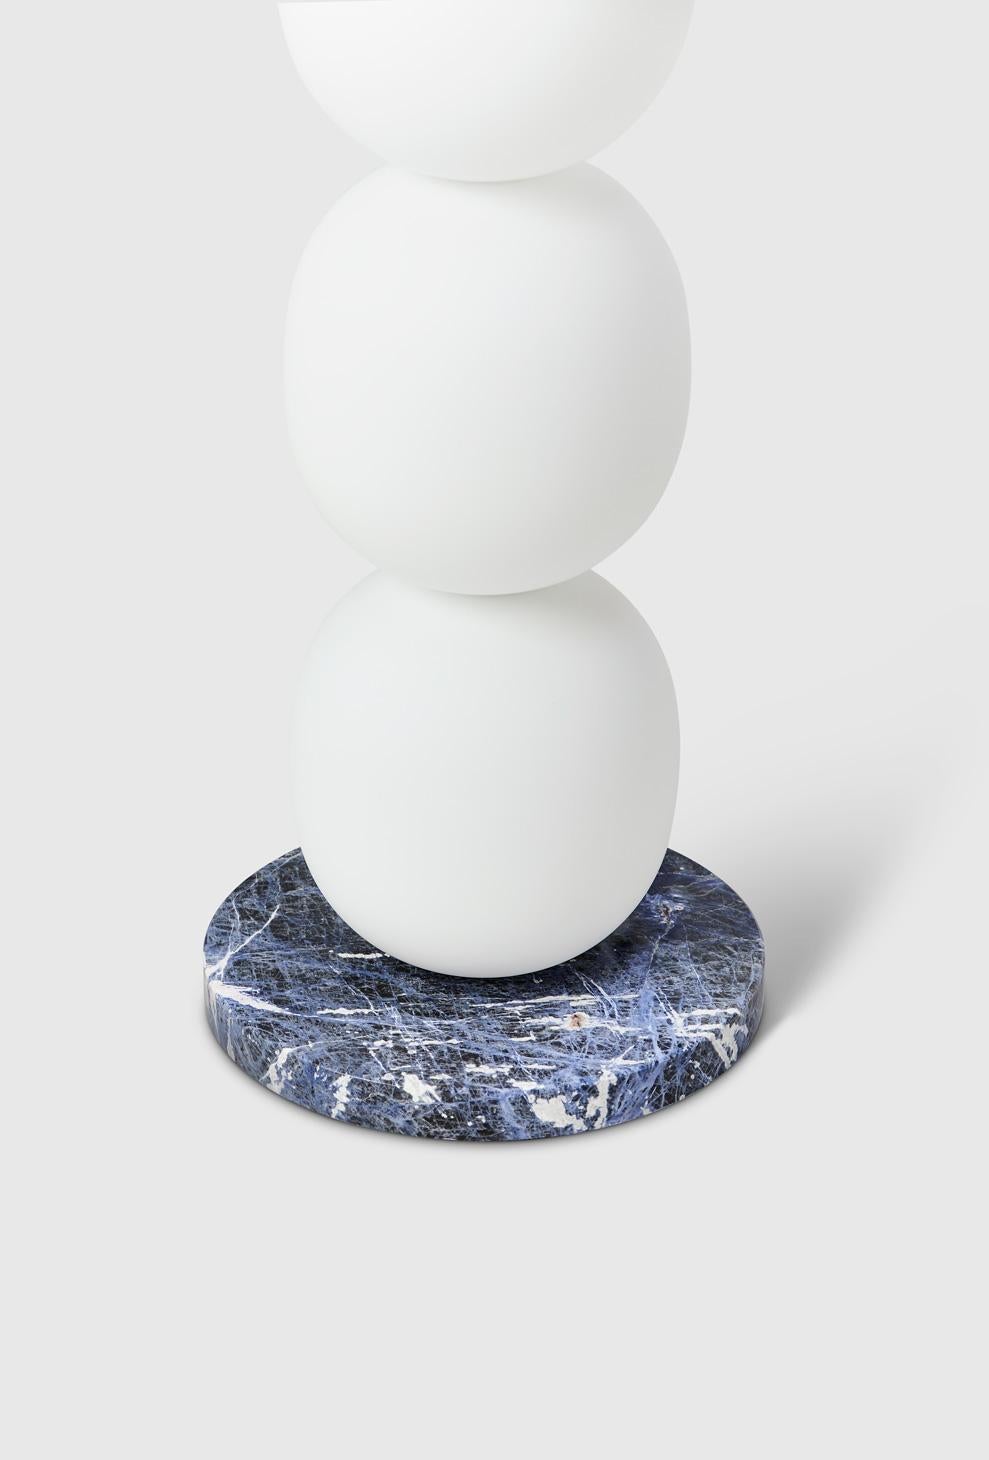 Modern Limited Edition Mainkai Table Lamp by Sebastian Herkner in Sodalite Blue